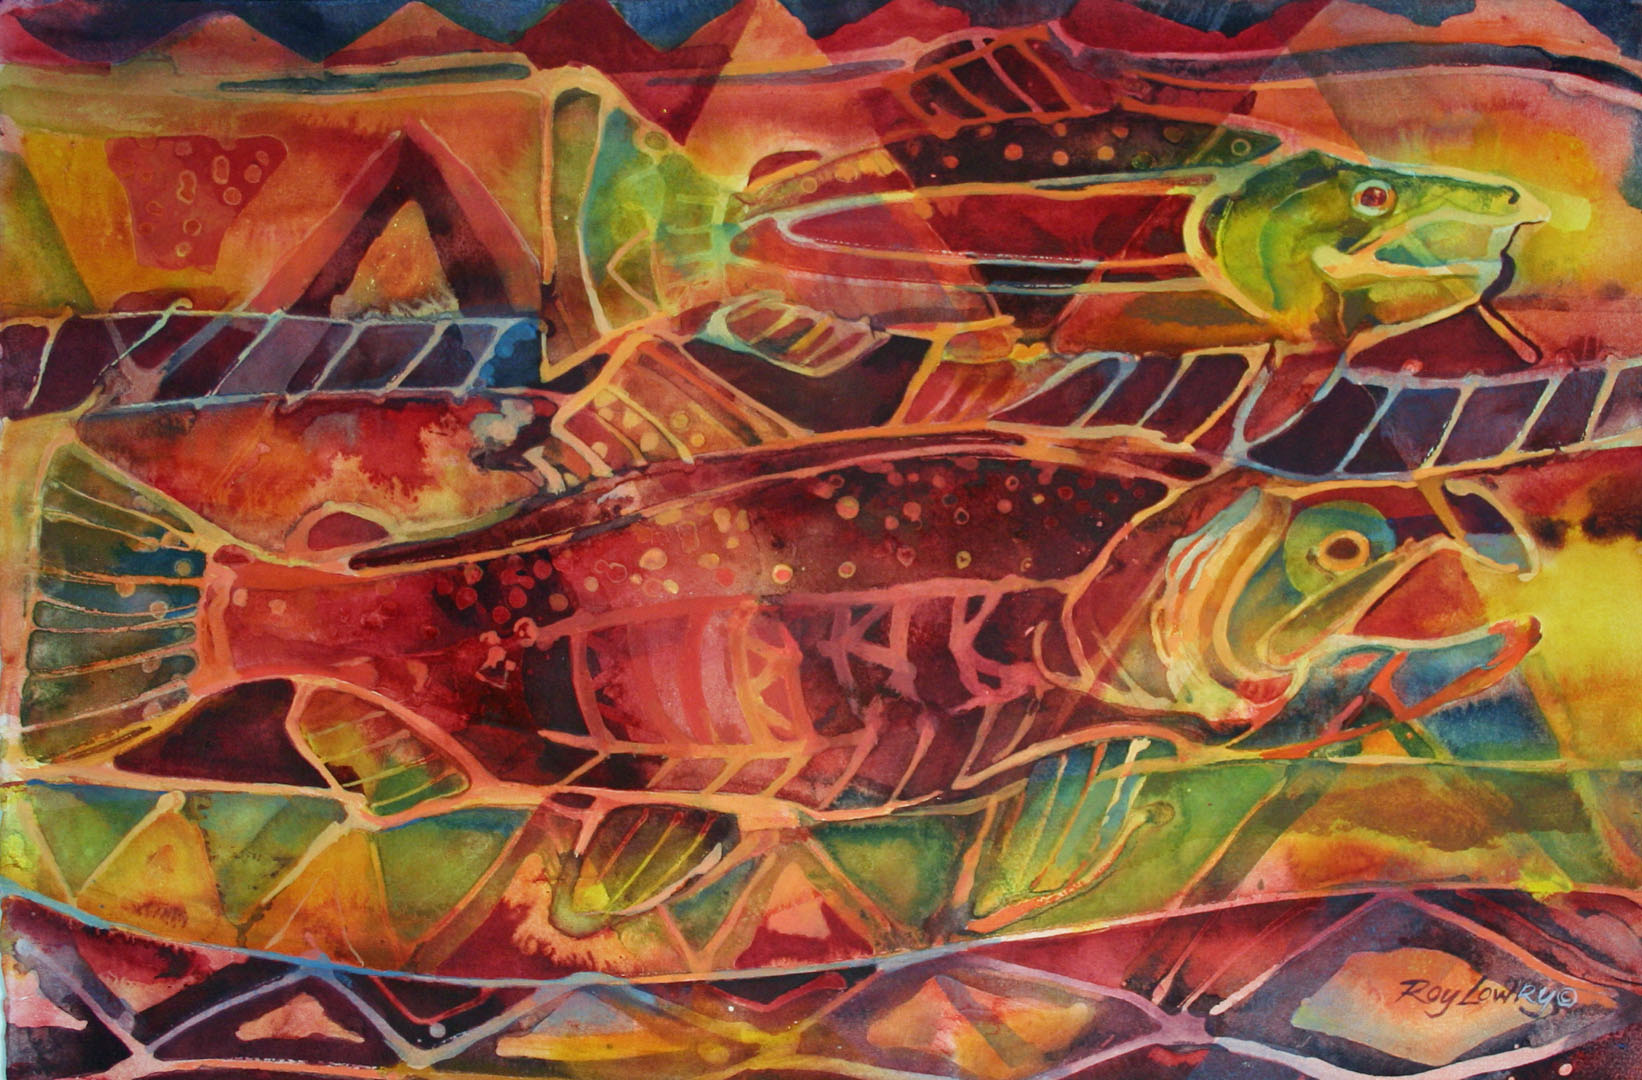 Salmon Batik, Watercolor on paper, 22 x 15